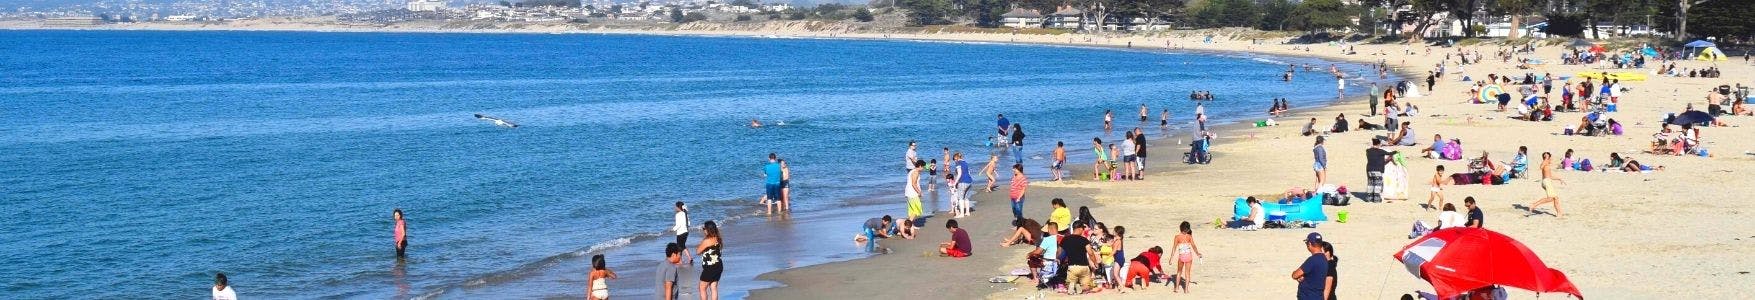 People enjoying Monterey State Beach